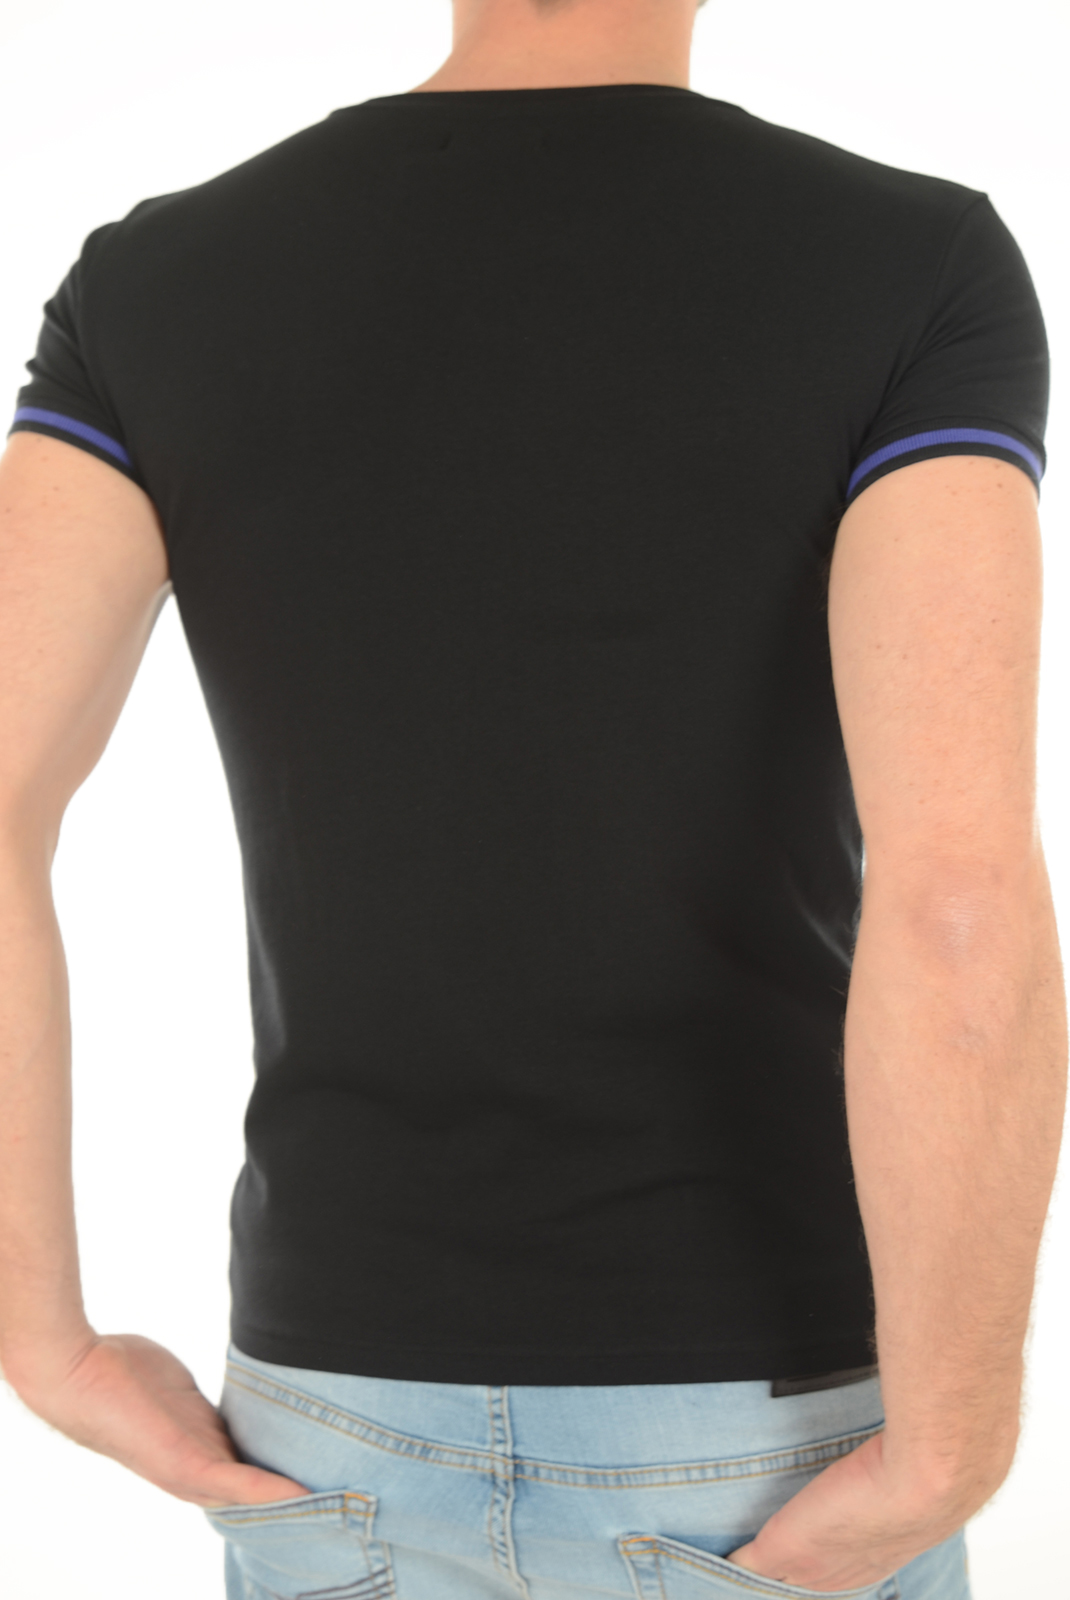 Emporio Armani Tee-shirt Noir Stretch 111035 6A525